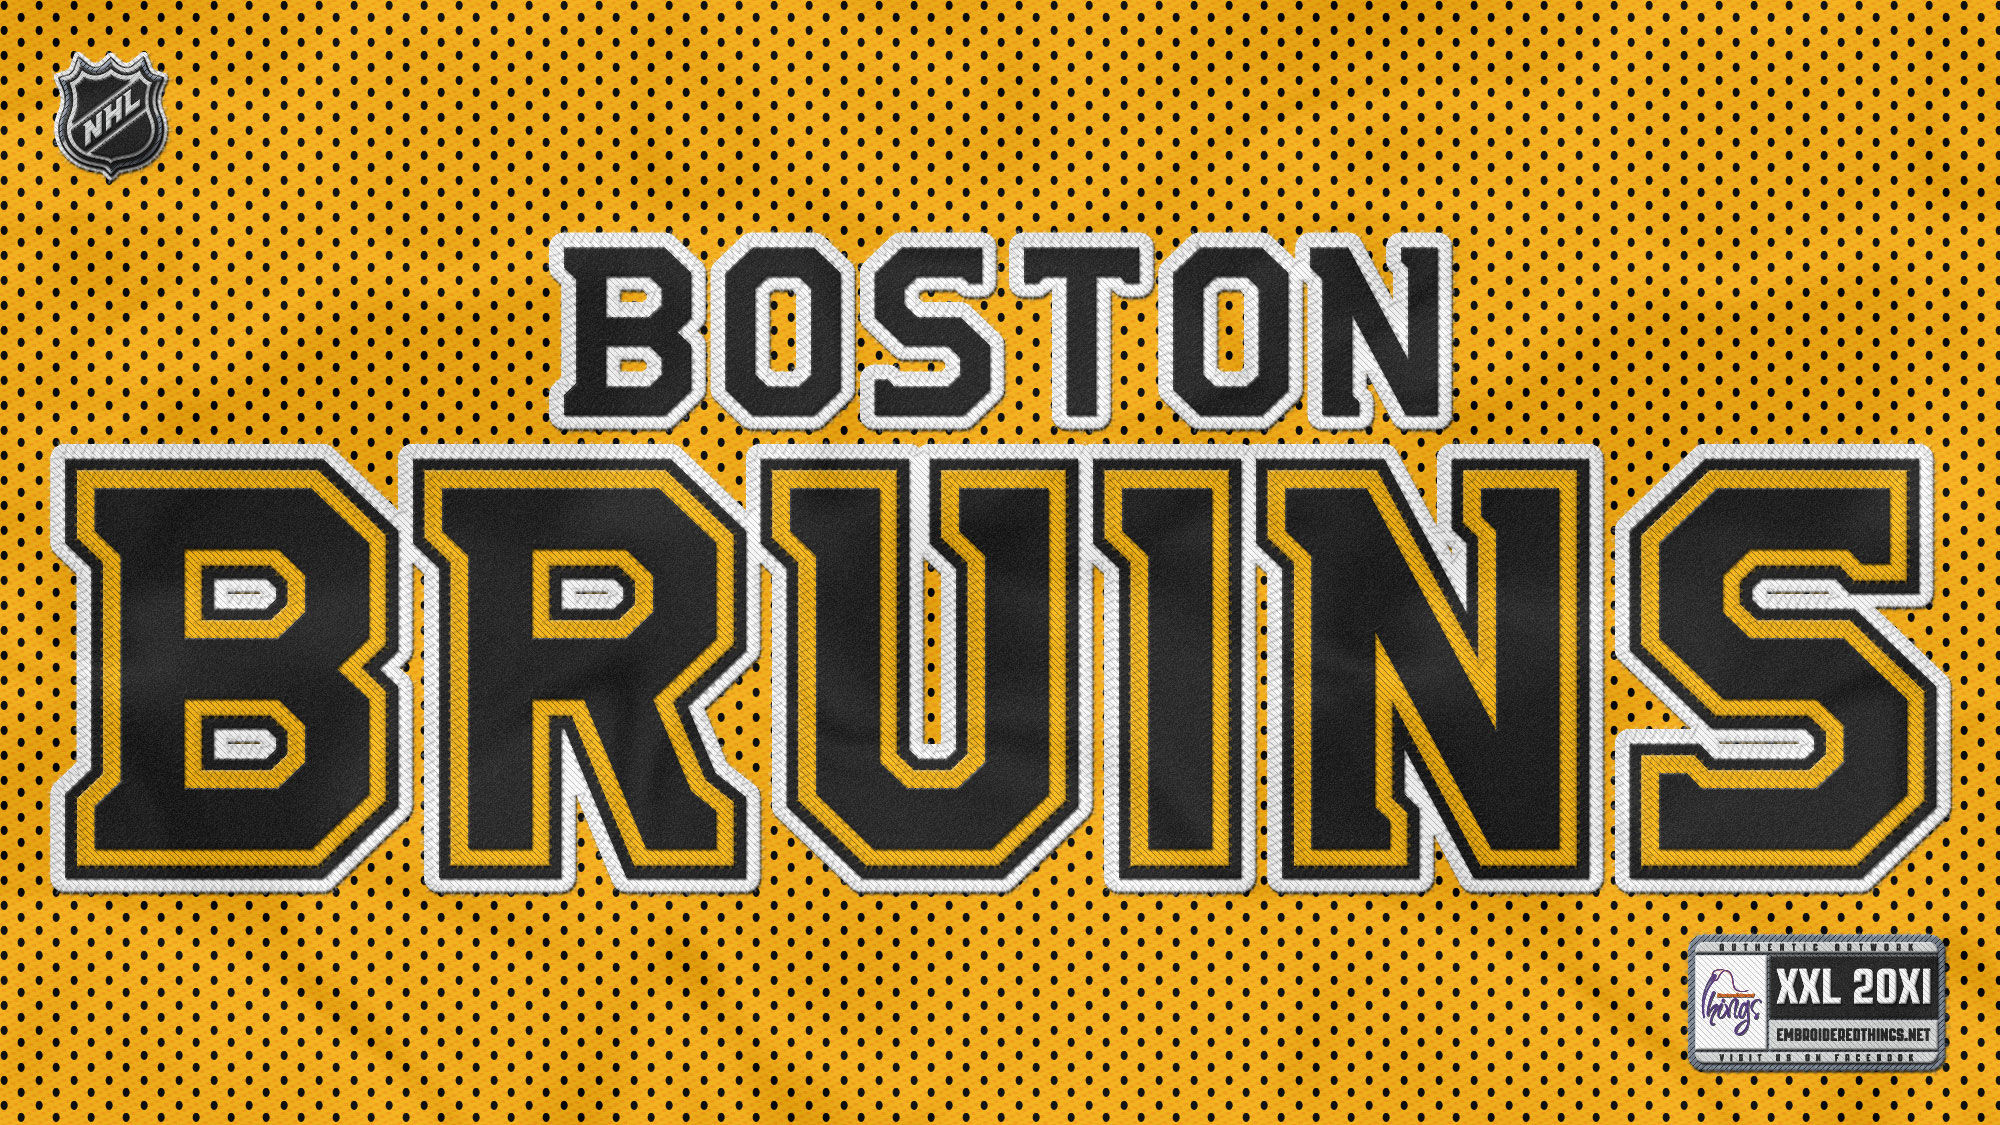 Wallpaper Bruins De Boston Maximumwall